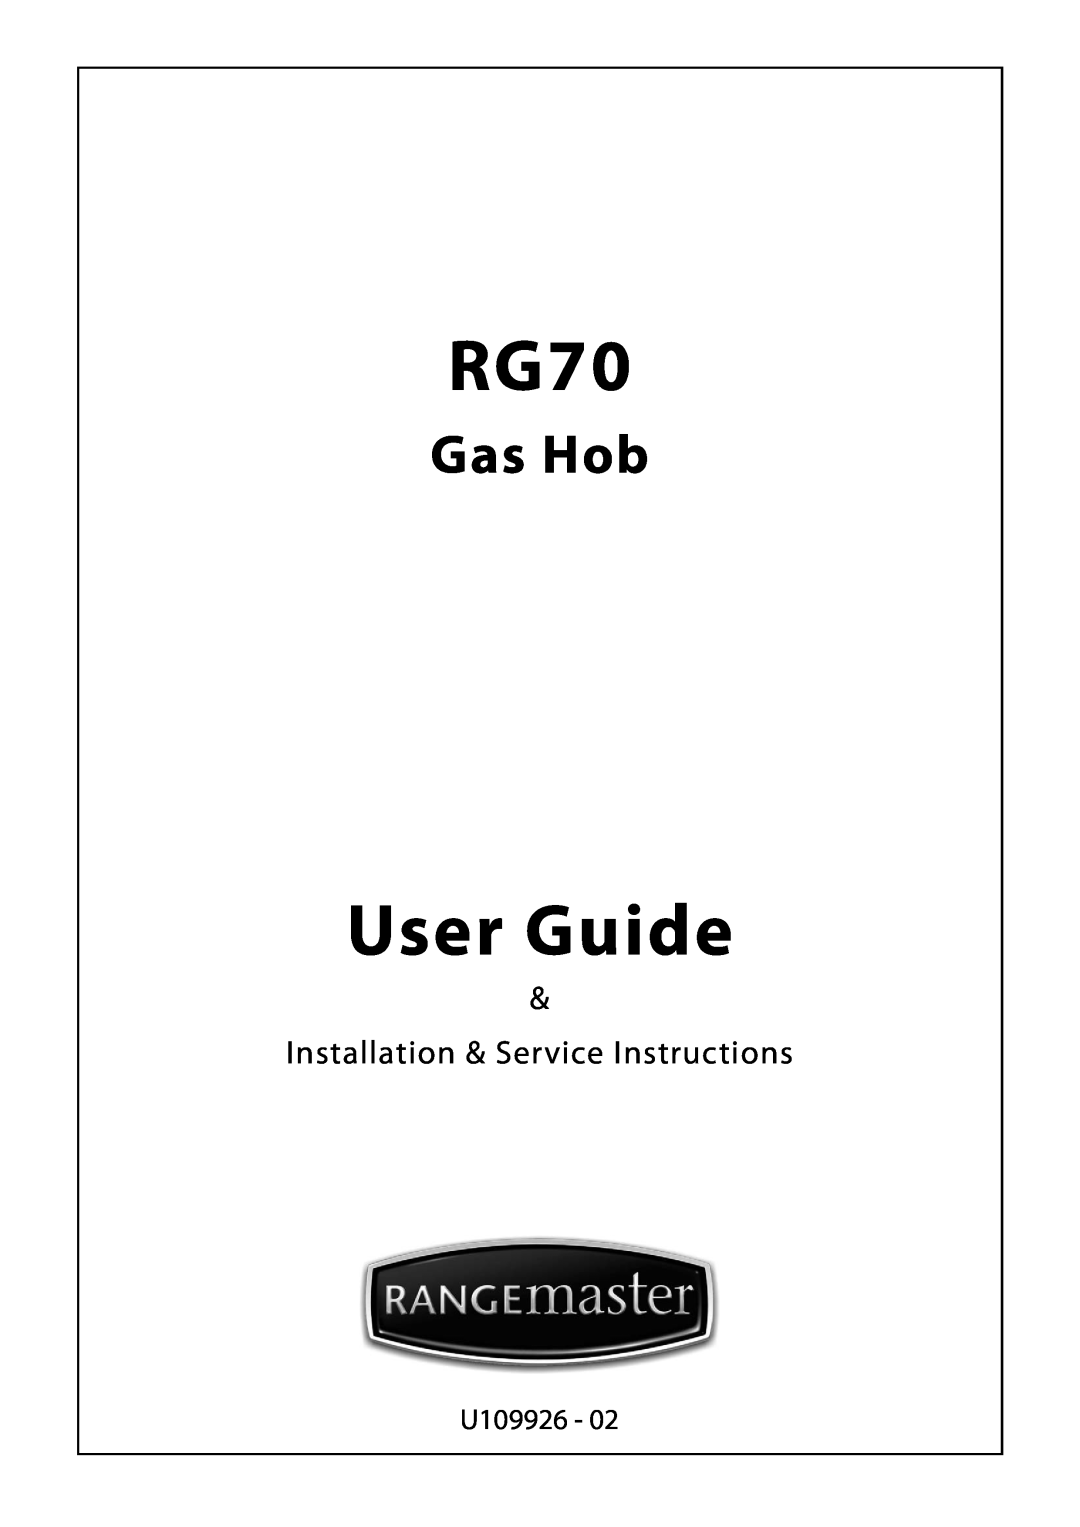 Rangemaster RG70 manual User Guide, Gas Hob, Installation & Service Instructions, U109926 